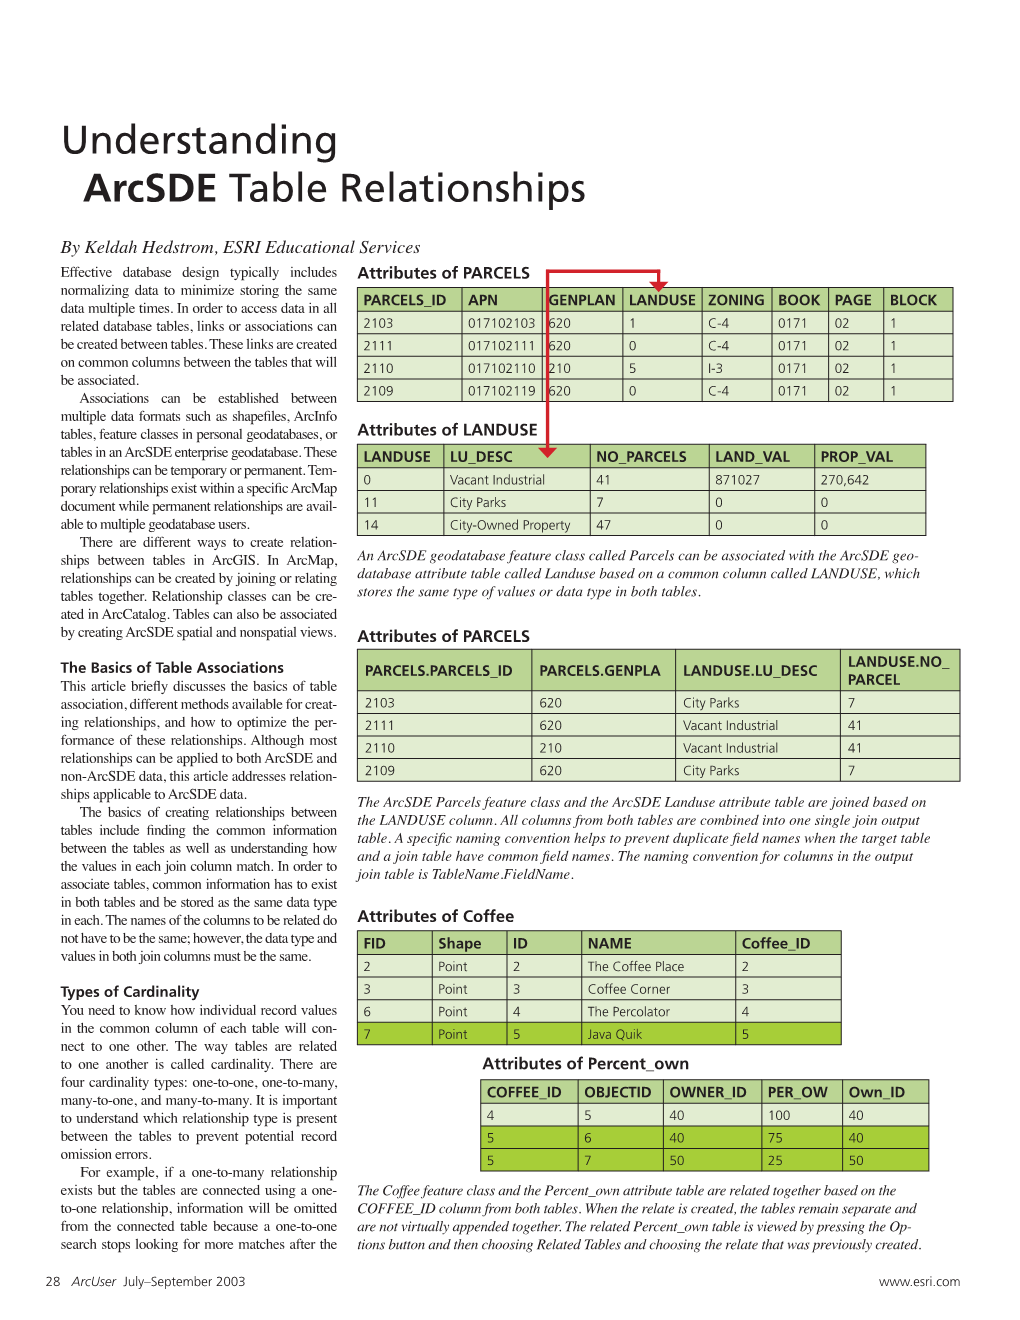 Understanding Arcsde Table Relationships